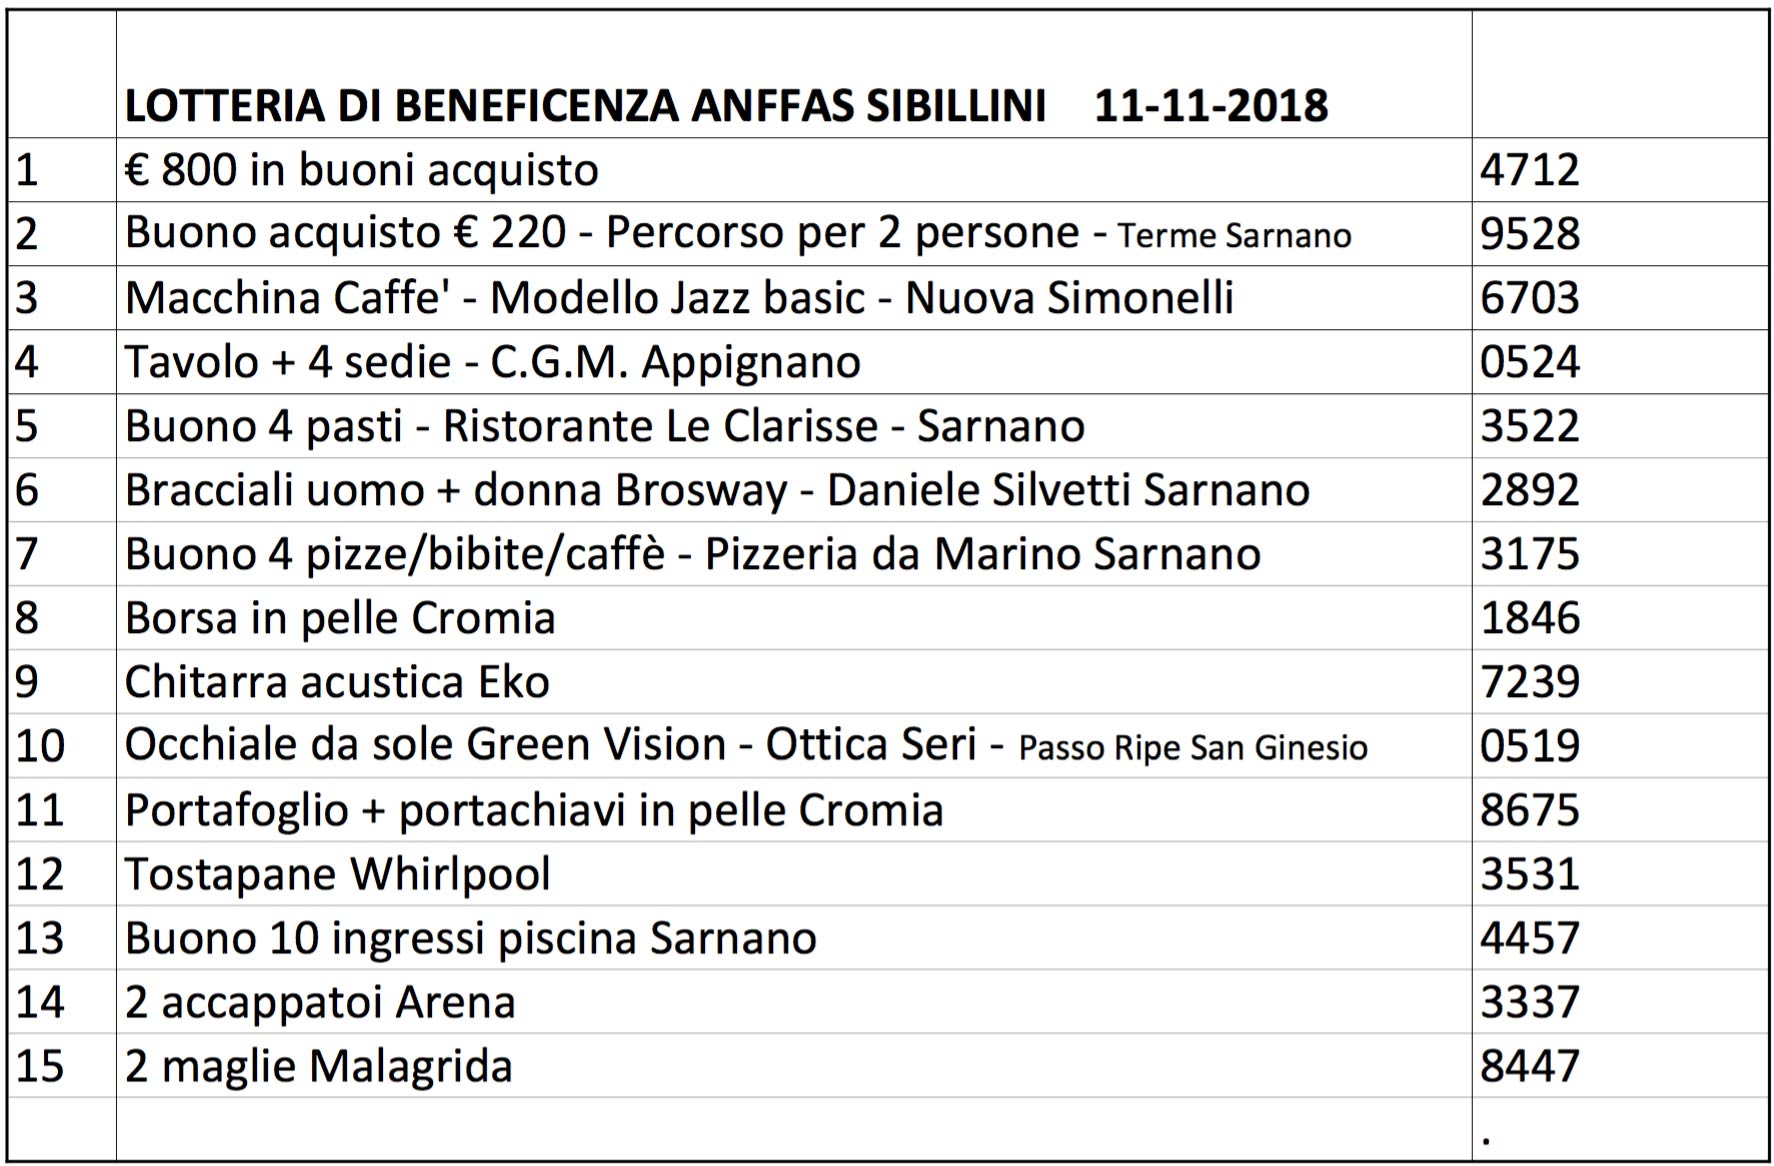 Lotteria Anffas Sibillini 2018 - Numeri vincenti